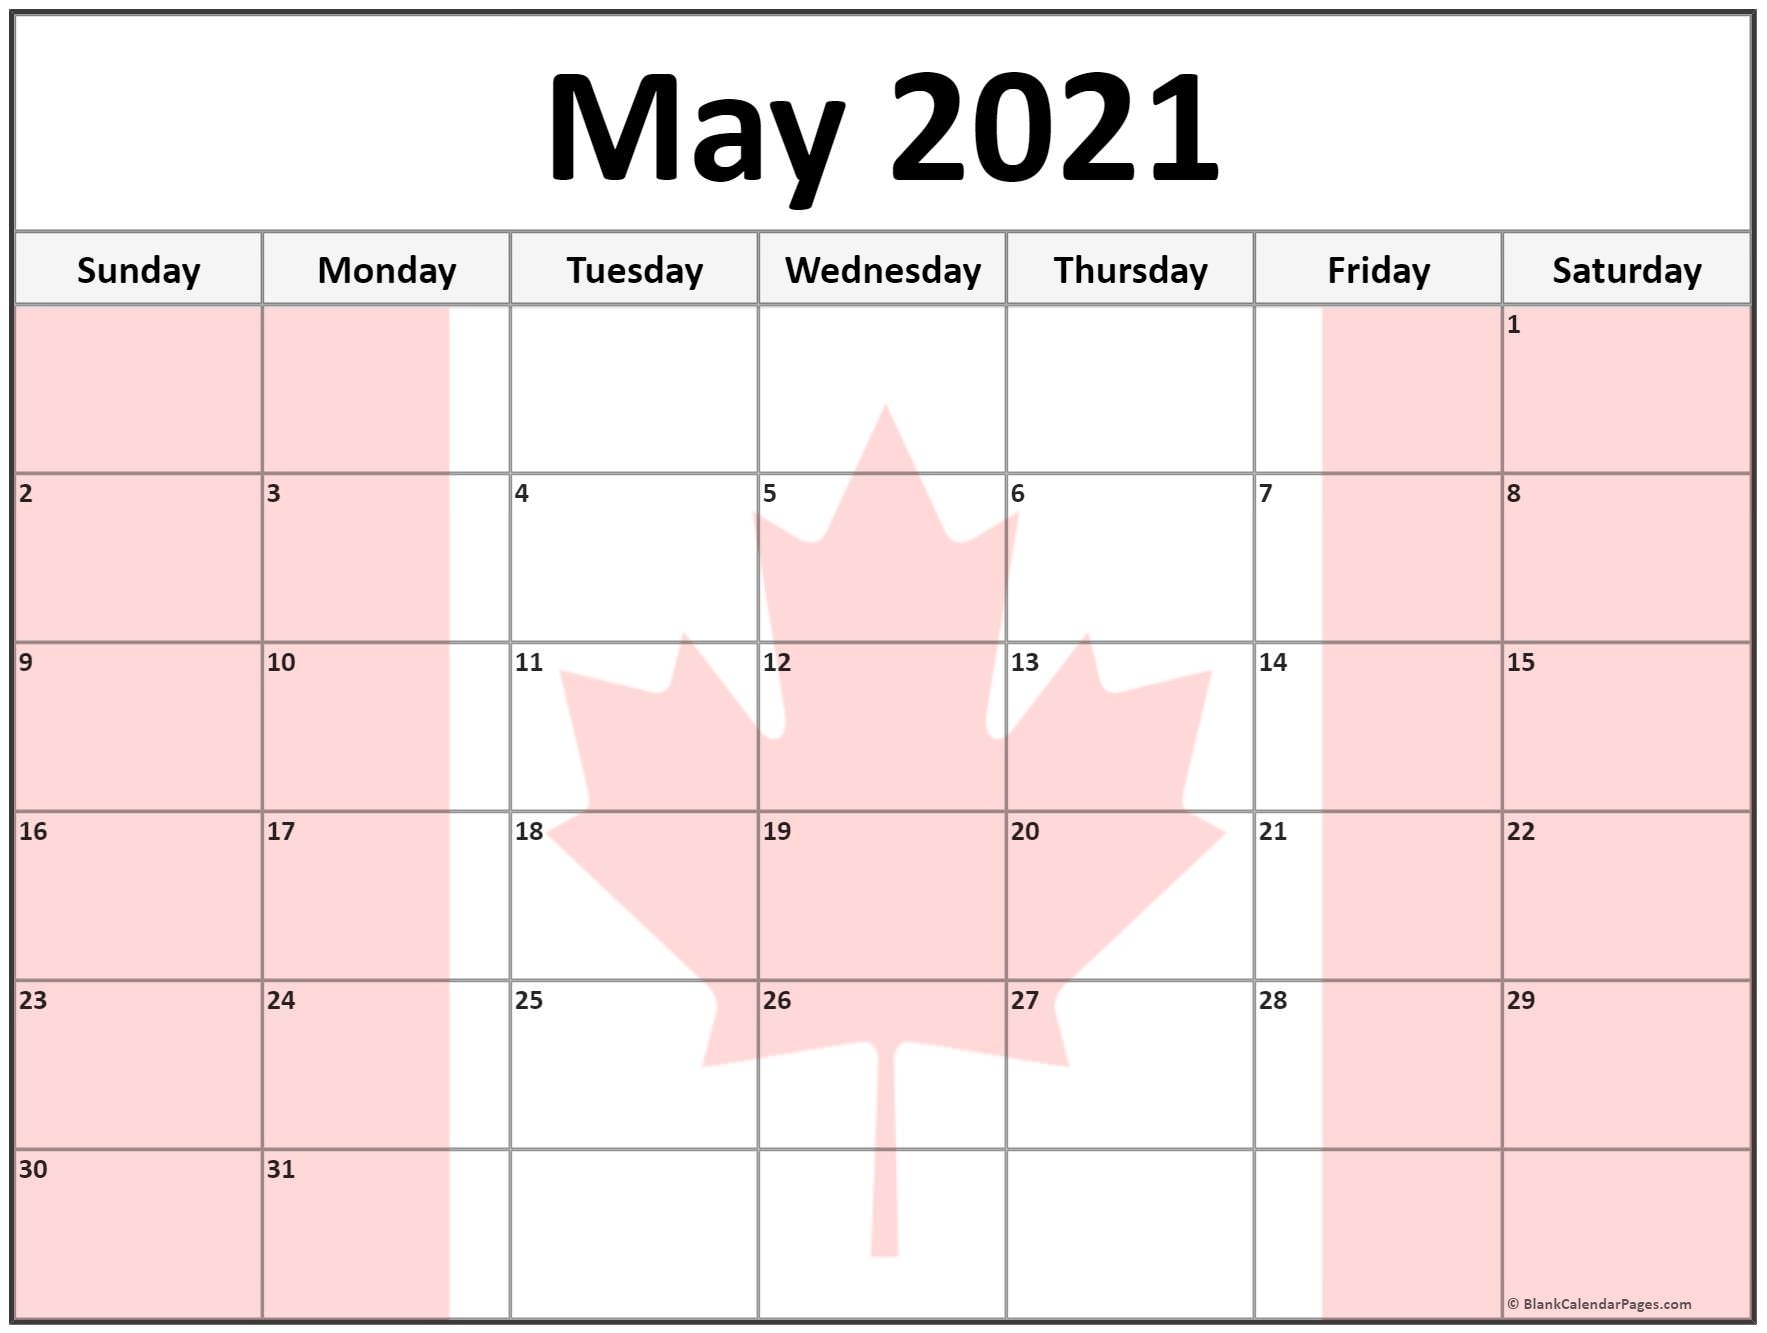 Get Calendar Week Wise Of 2021